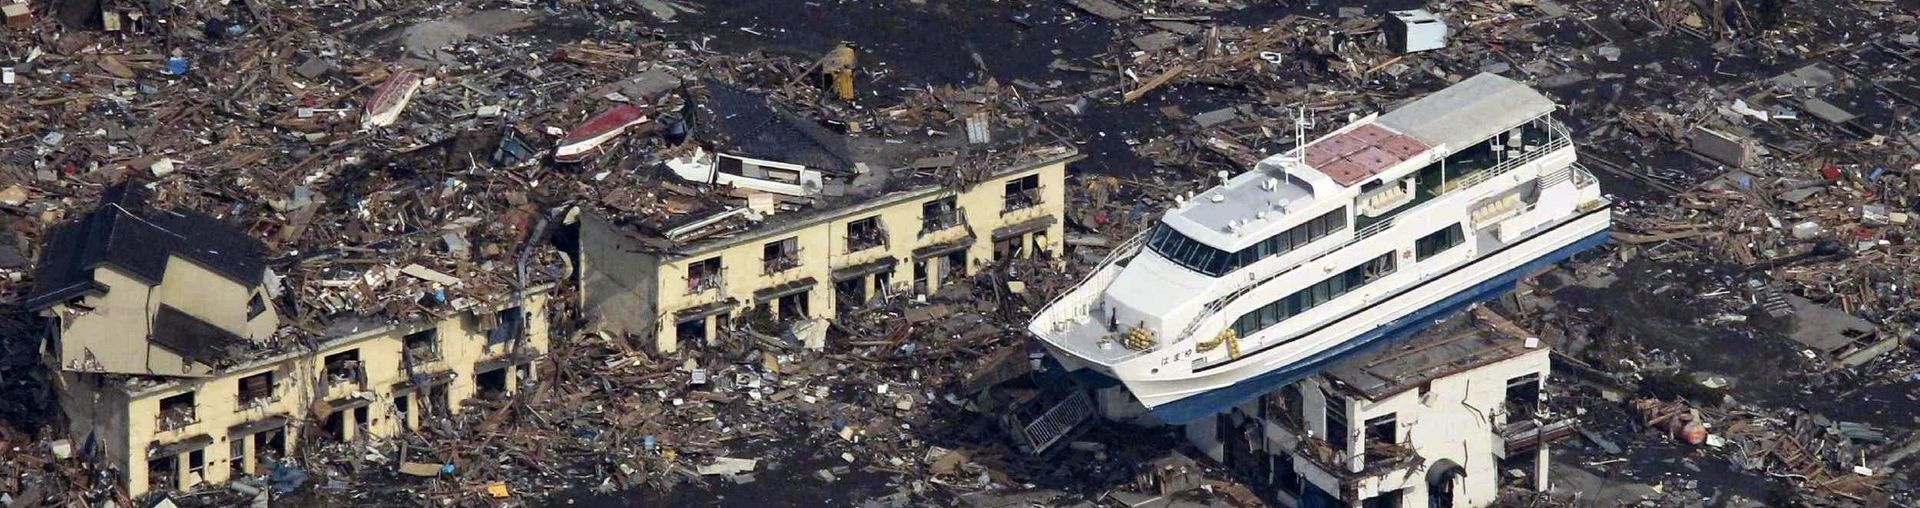 Как цунами выбросило корабли на берег в Японии